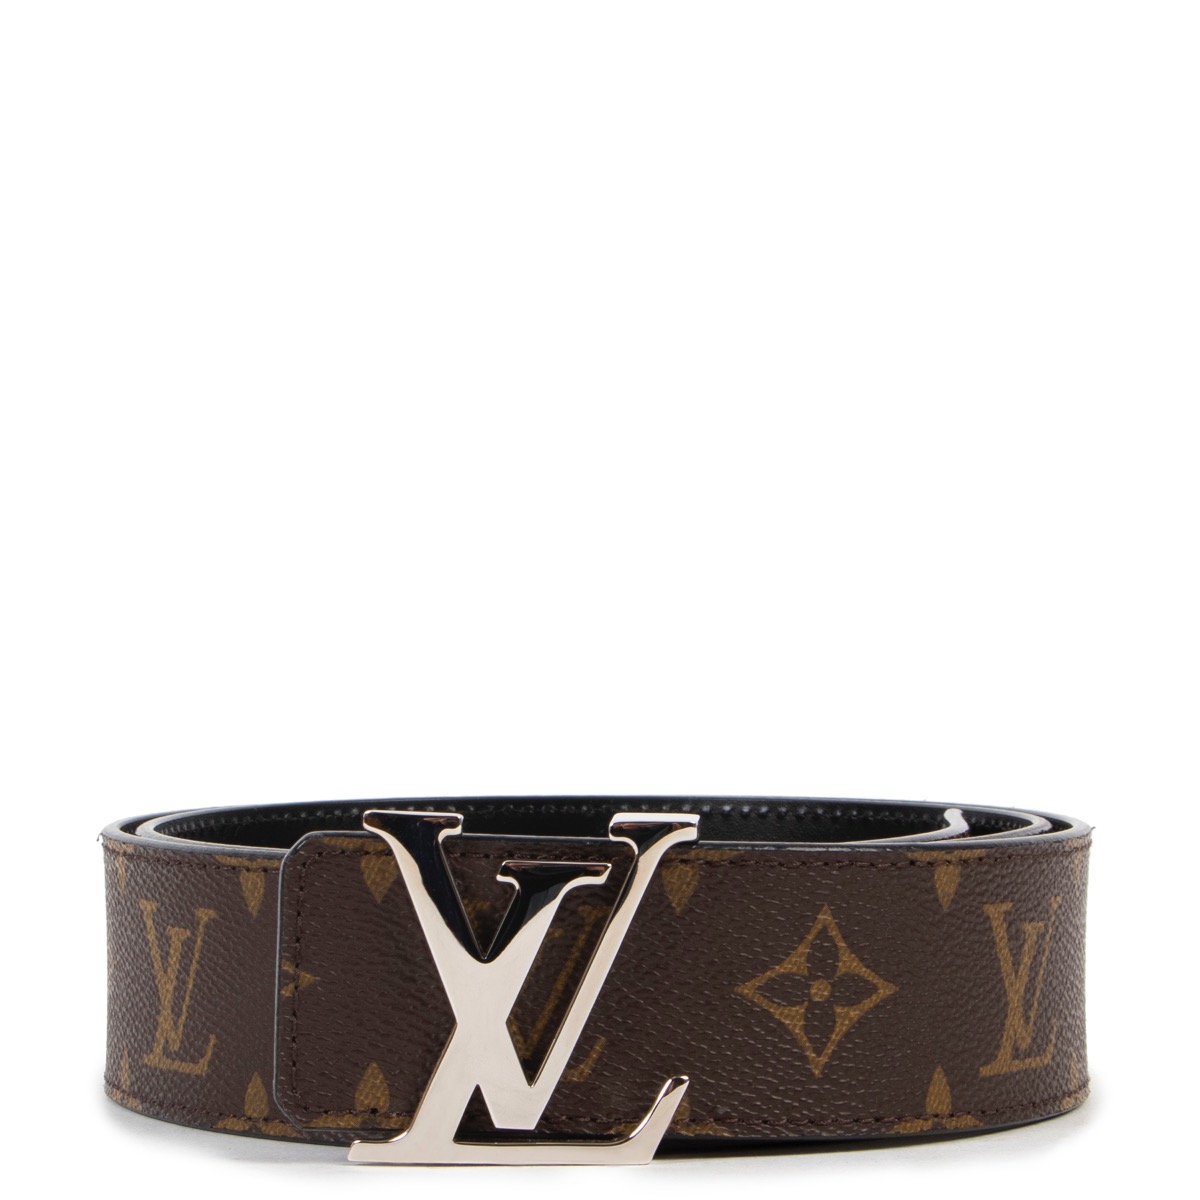 Authentic Louis Vuitton belt - Size 90/36, Dust Bag and Box incl, Men's, Calgary